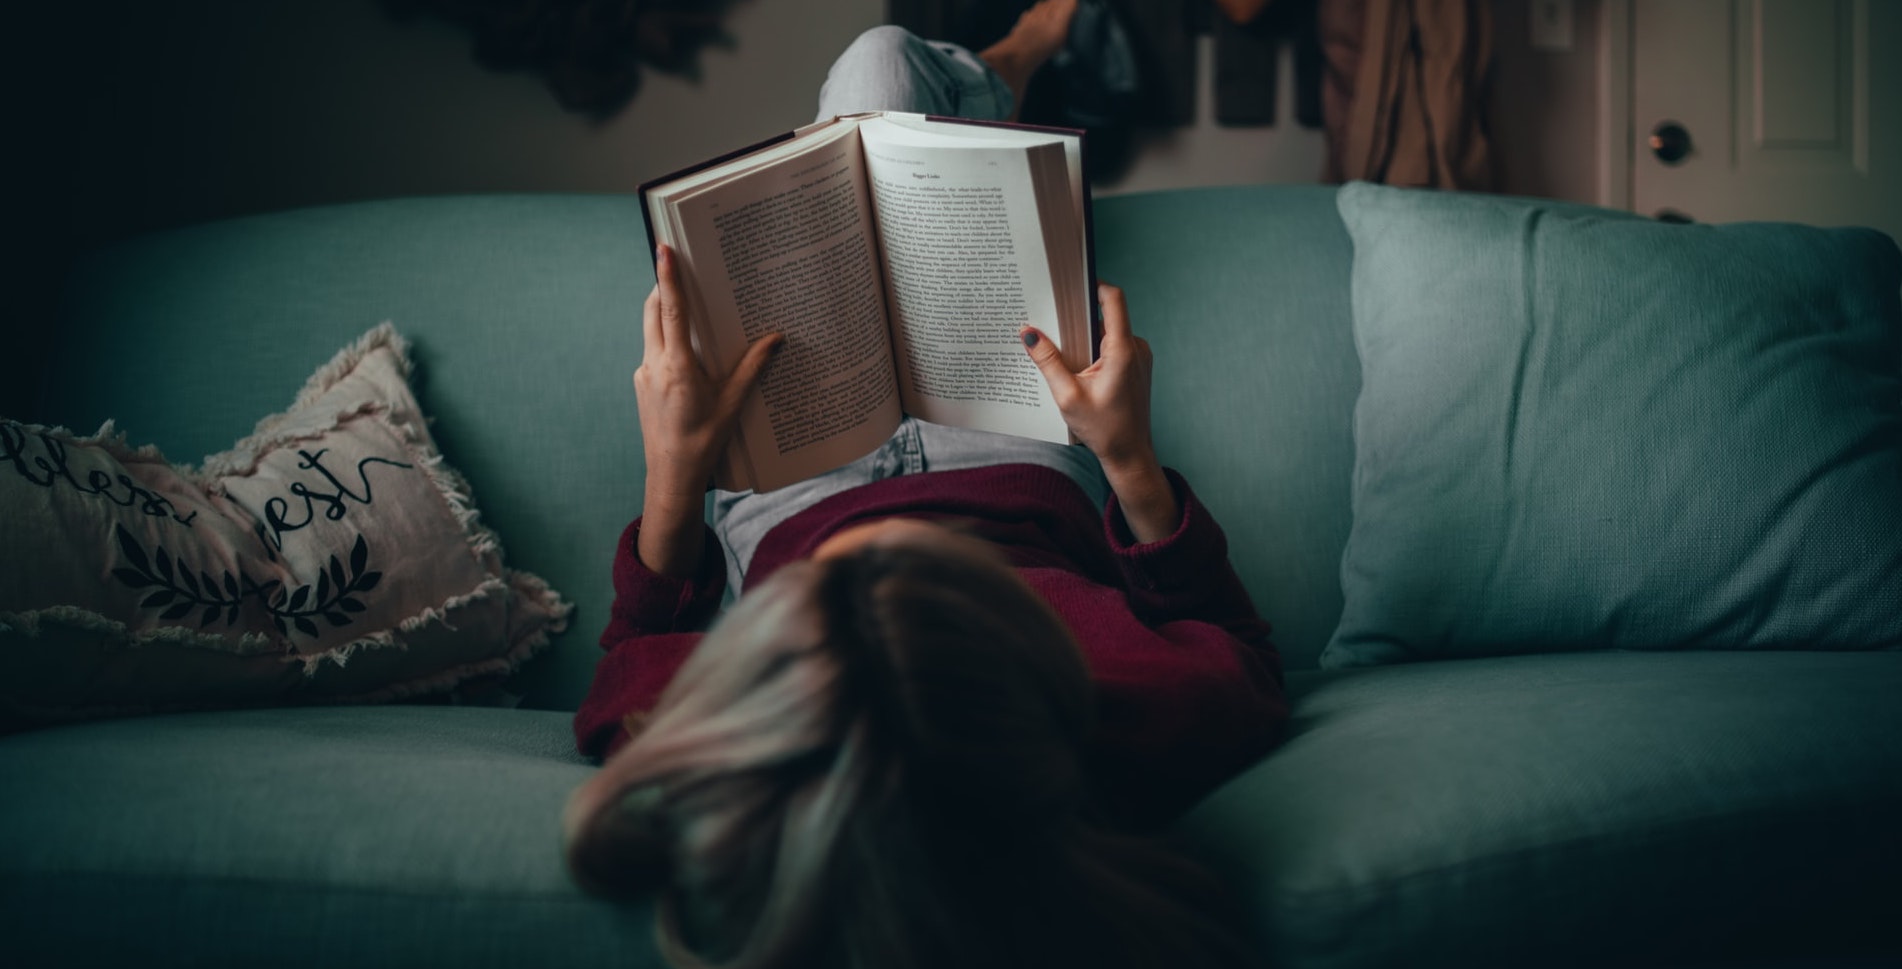 Auf dem Bild ist eine Frau von hinten zu sehen, die auf einem grünen Sofa liegt und ein Buch liest.